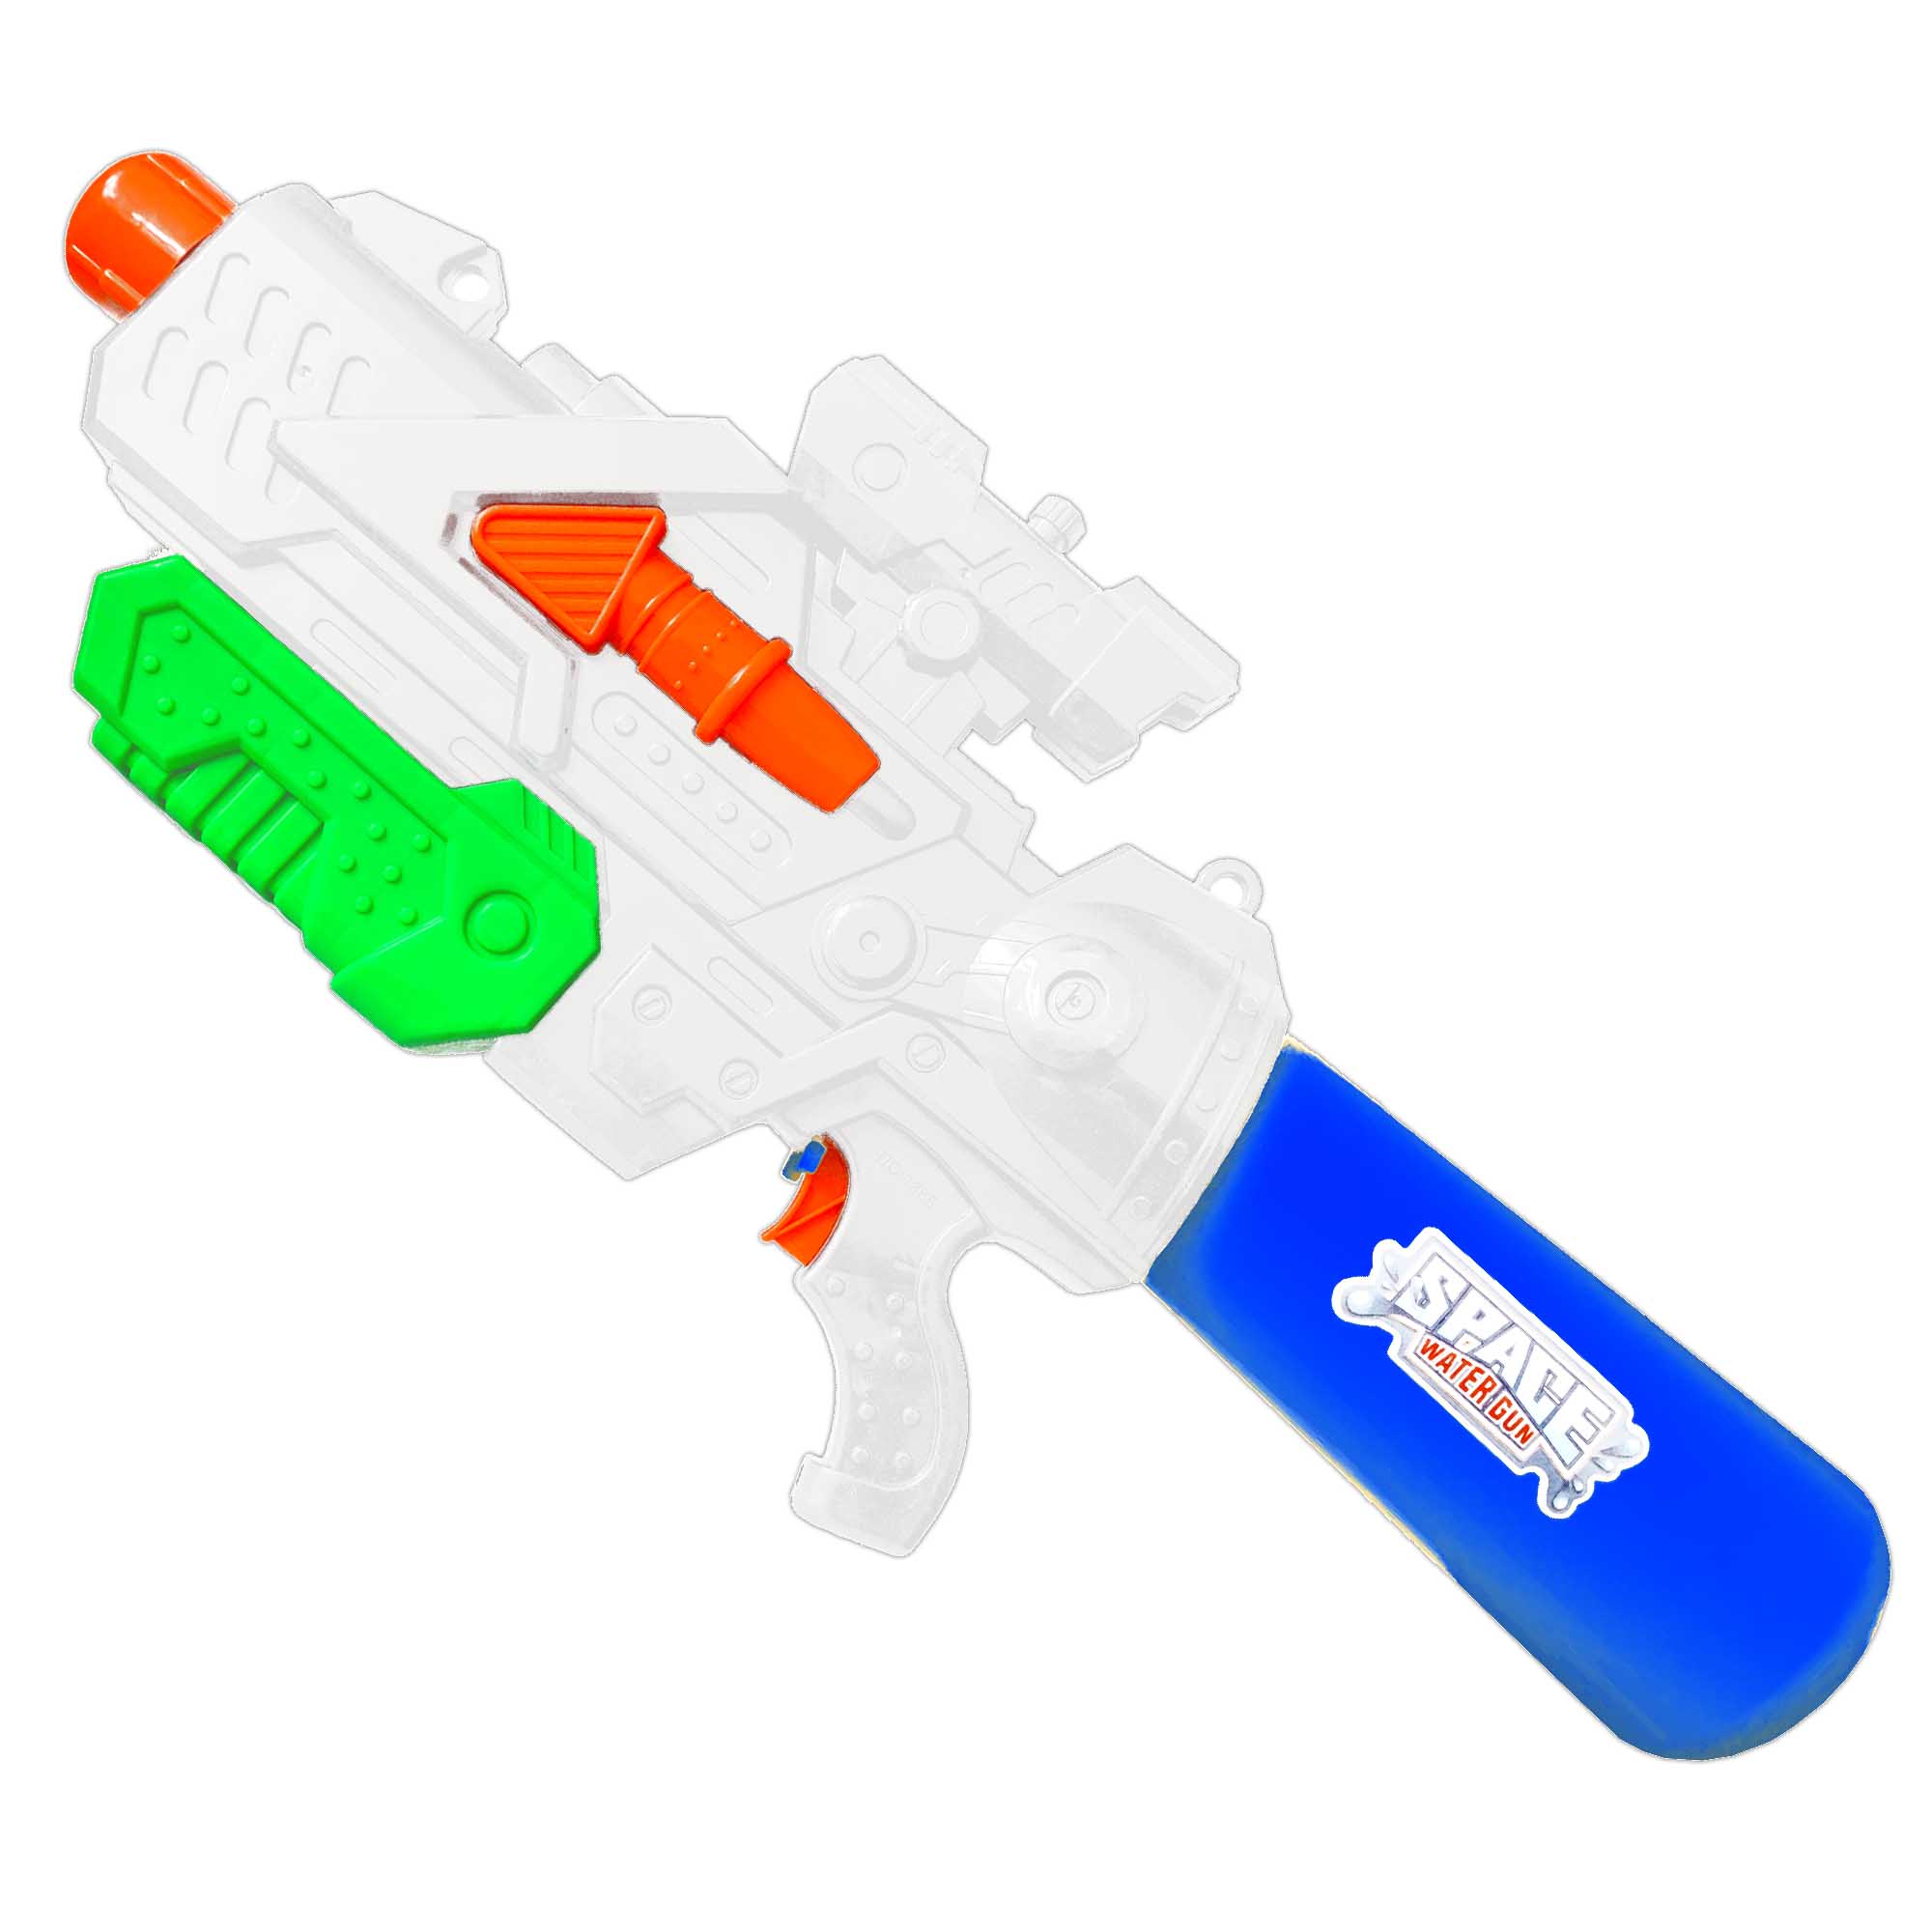 600ml Wasserpistole Wassergewehr Super Soaker Spielzeug Wasser Spritzpistole Neu 